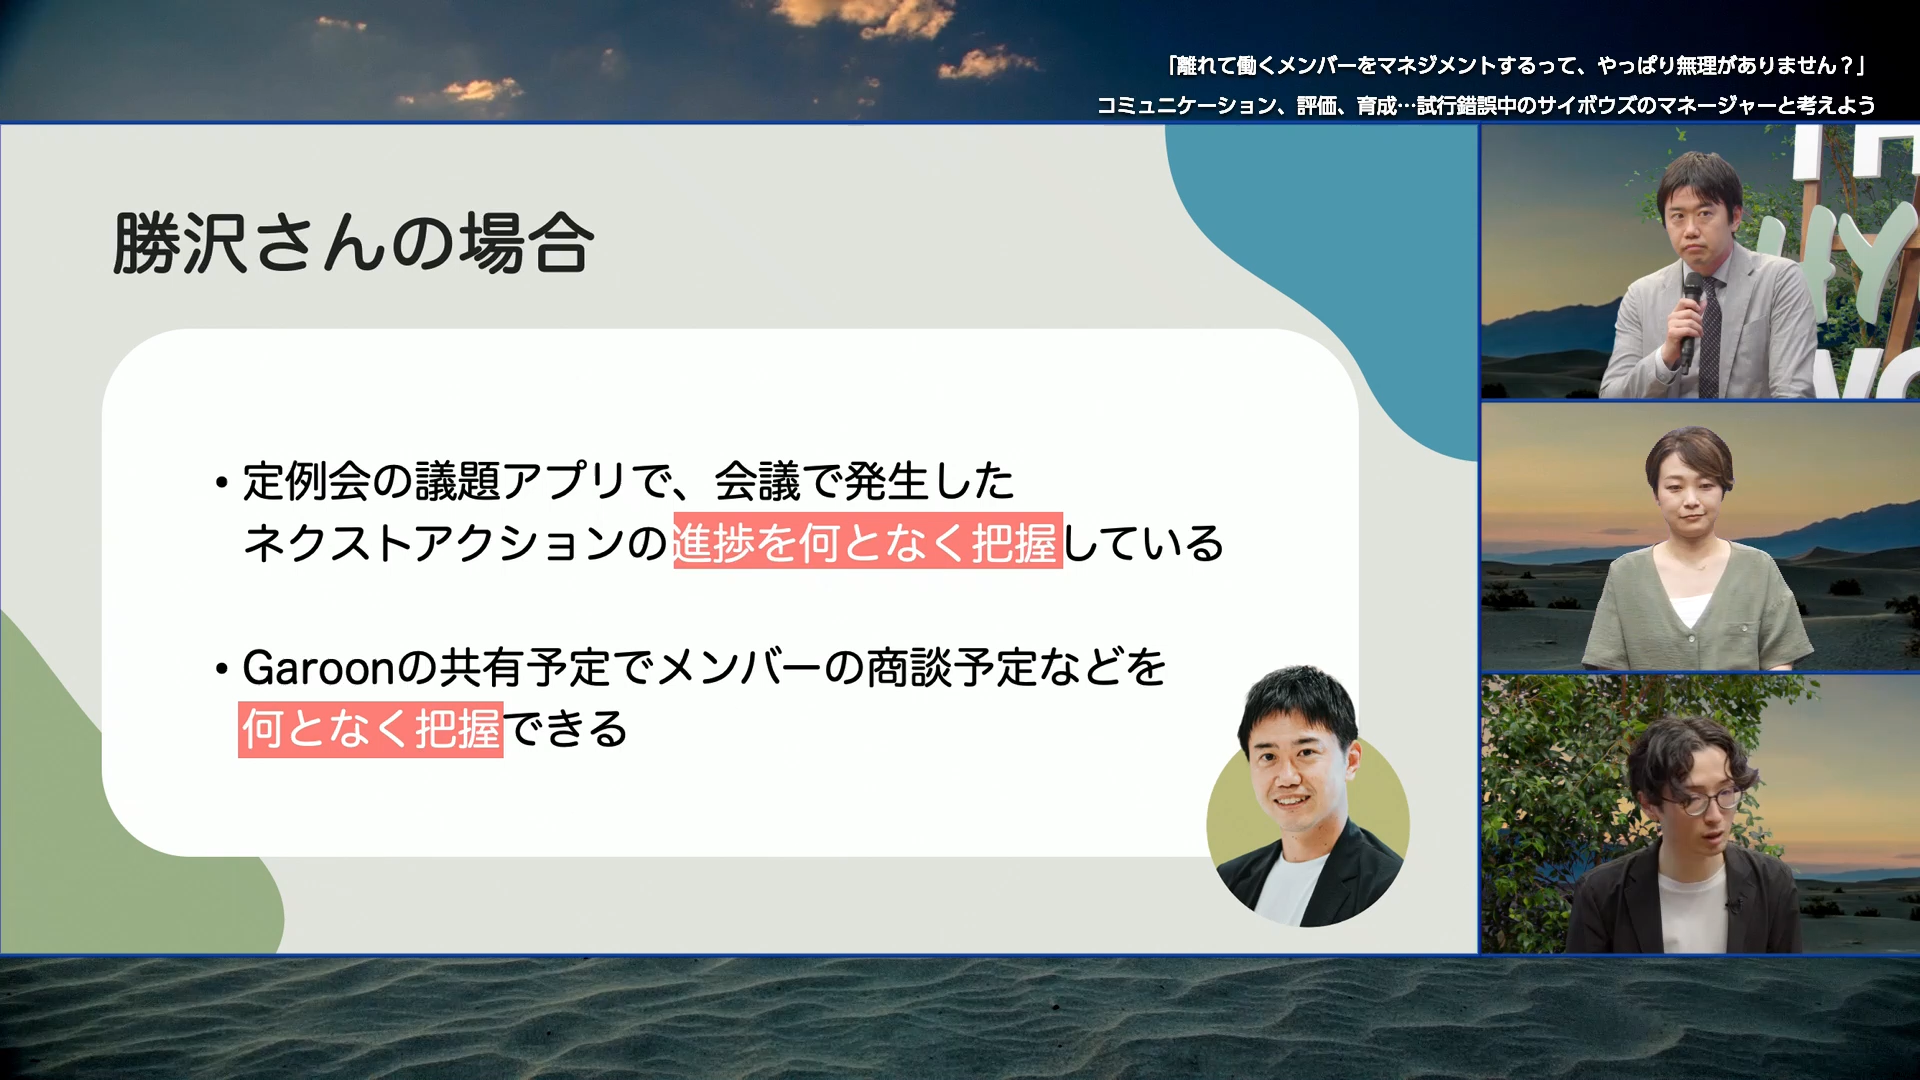 勝沢さんのメンバーのタスクや業務の状況についてのスライド